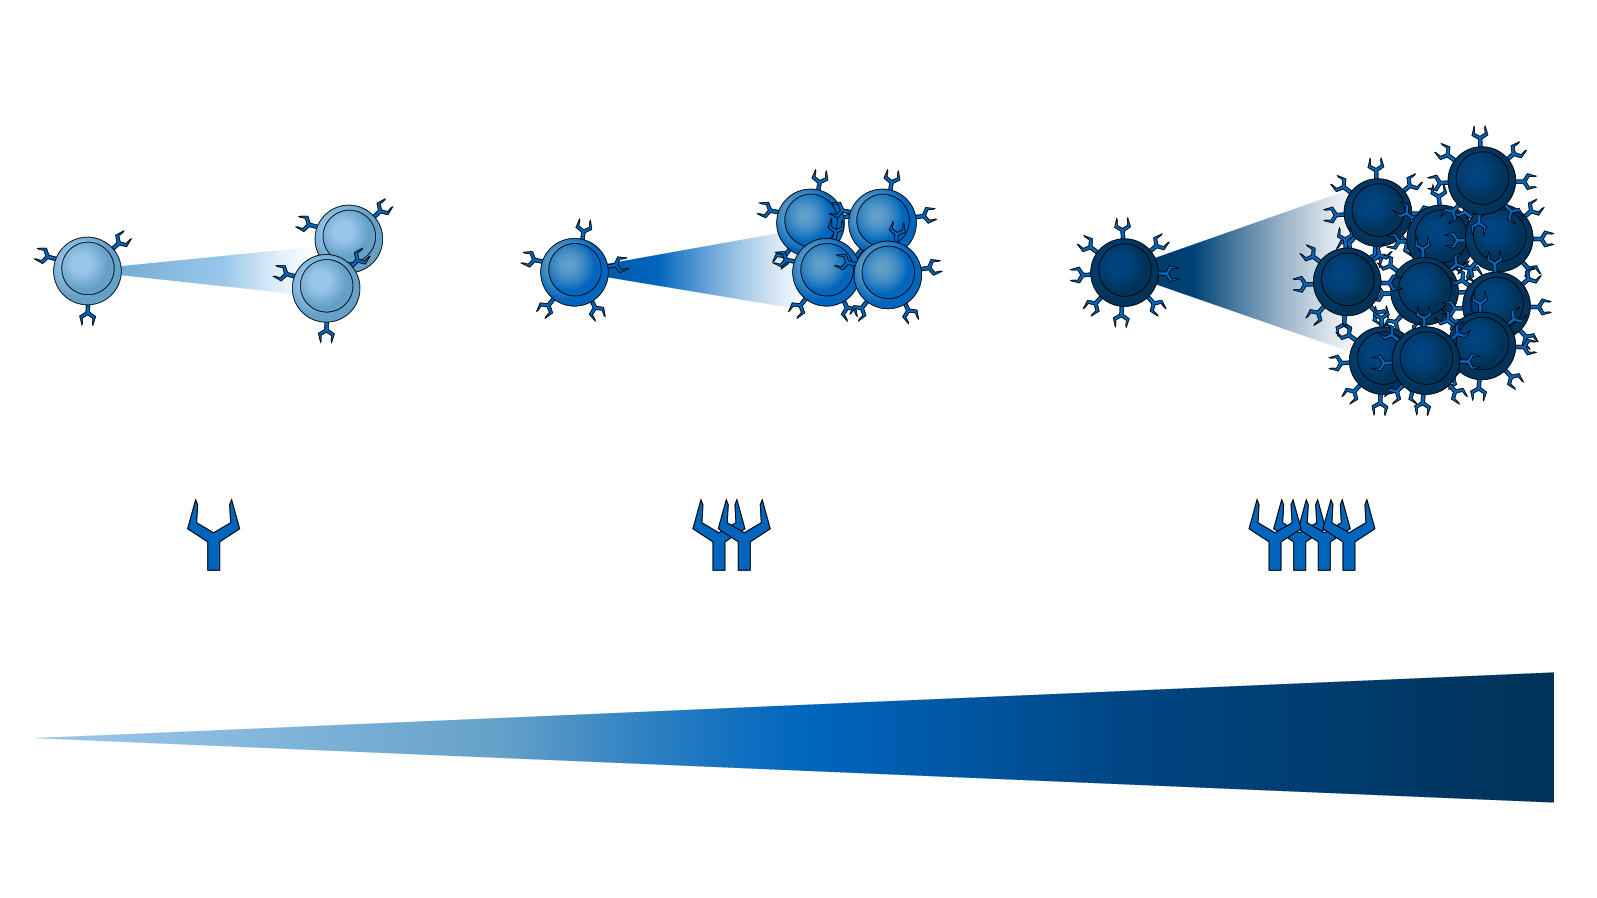 Die Grafik zeigt die Verteilung des Ly49H-Rezeptors auf der Oberfläche von unterschiedlichen Natürlichen Killerzellen. Abhängig von der Menge des Oberflächenmoleküls vermehren sich einzelne Zellen stärker oder schwächer.